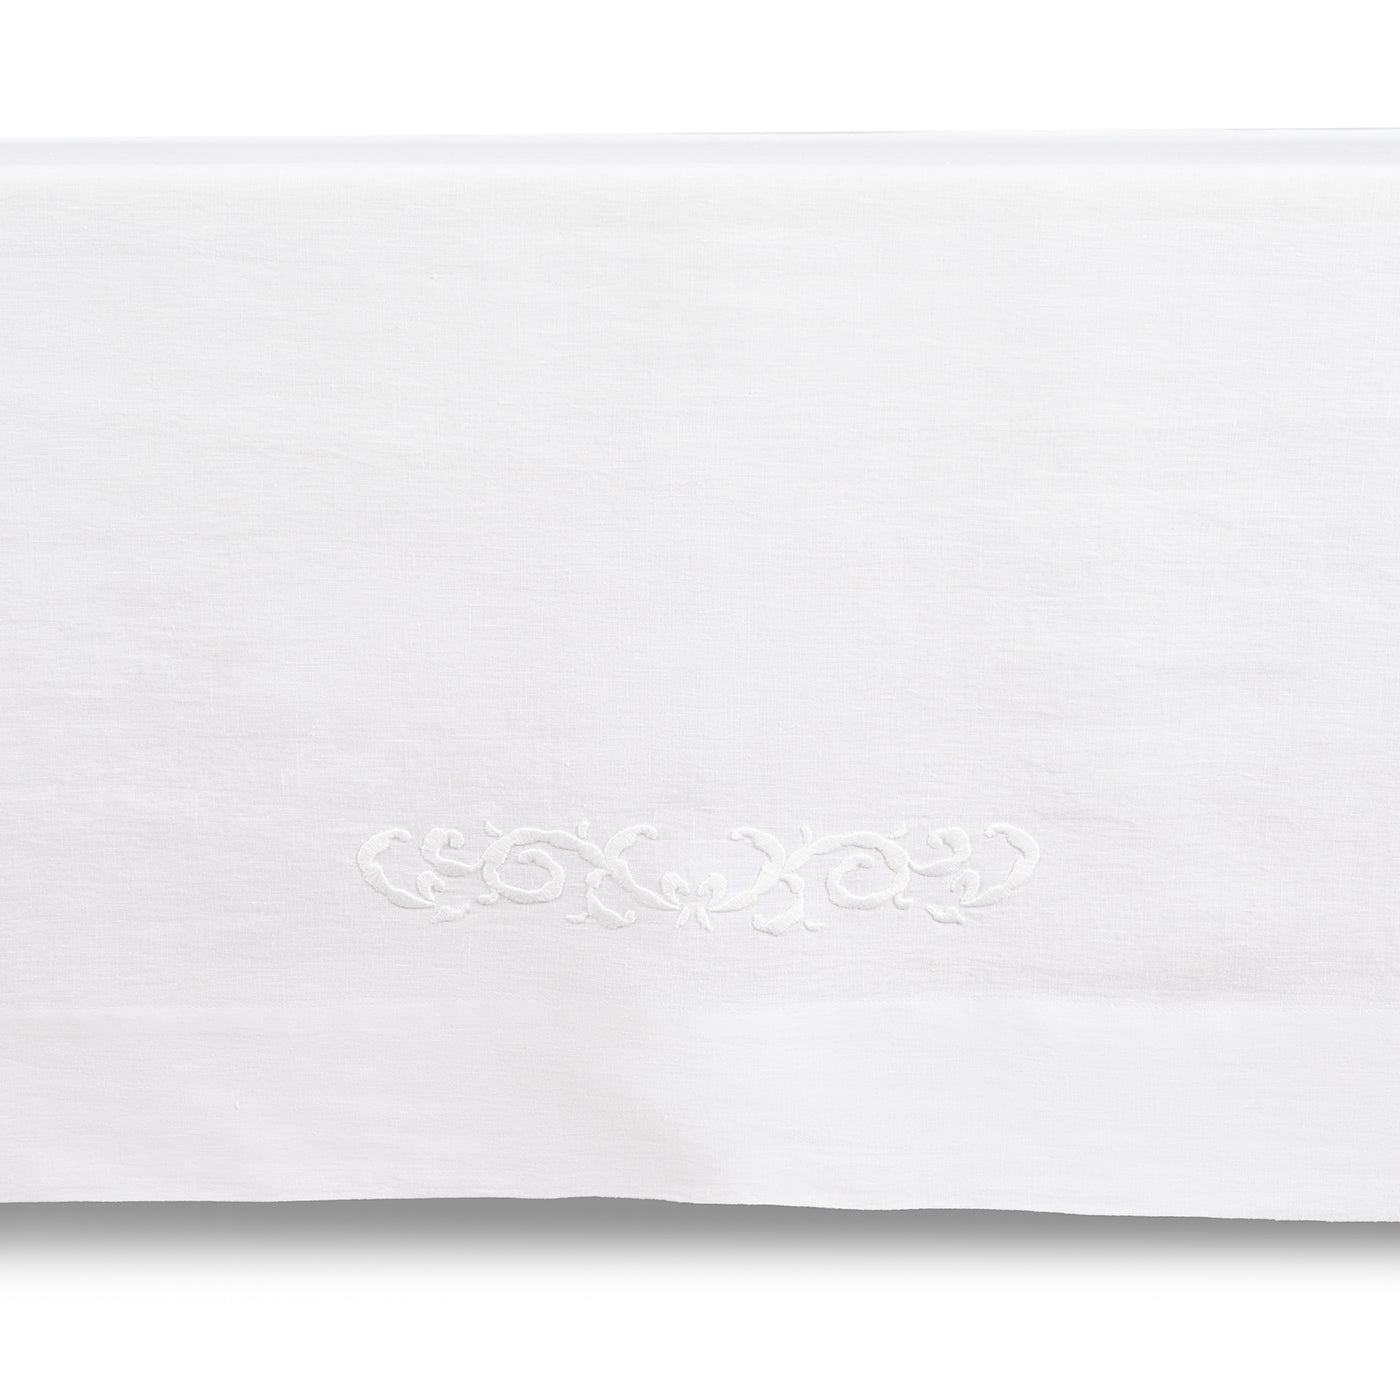 Decoro Embroidered White Tablecloth - Alternative view 1